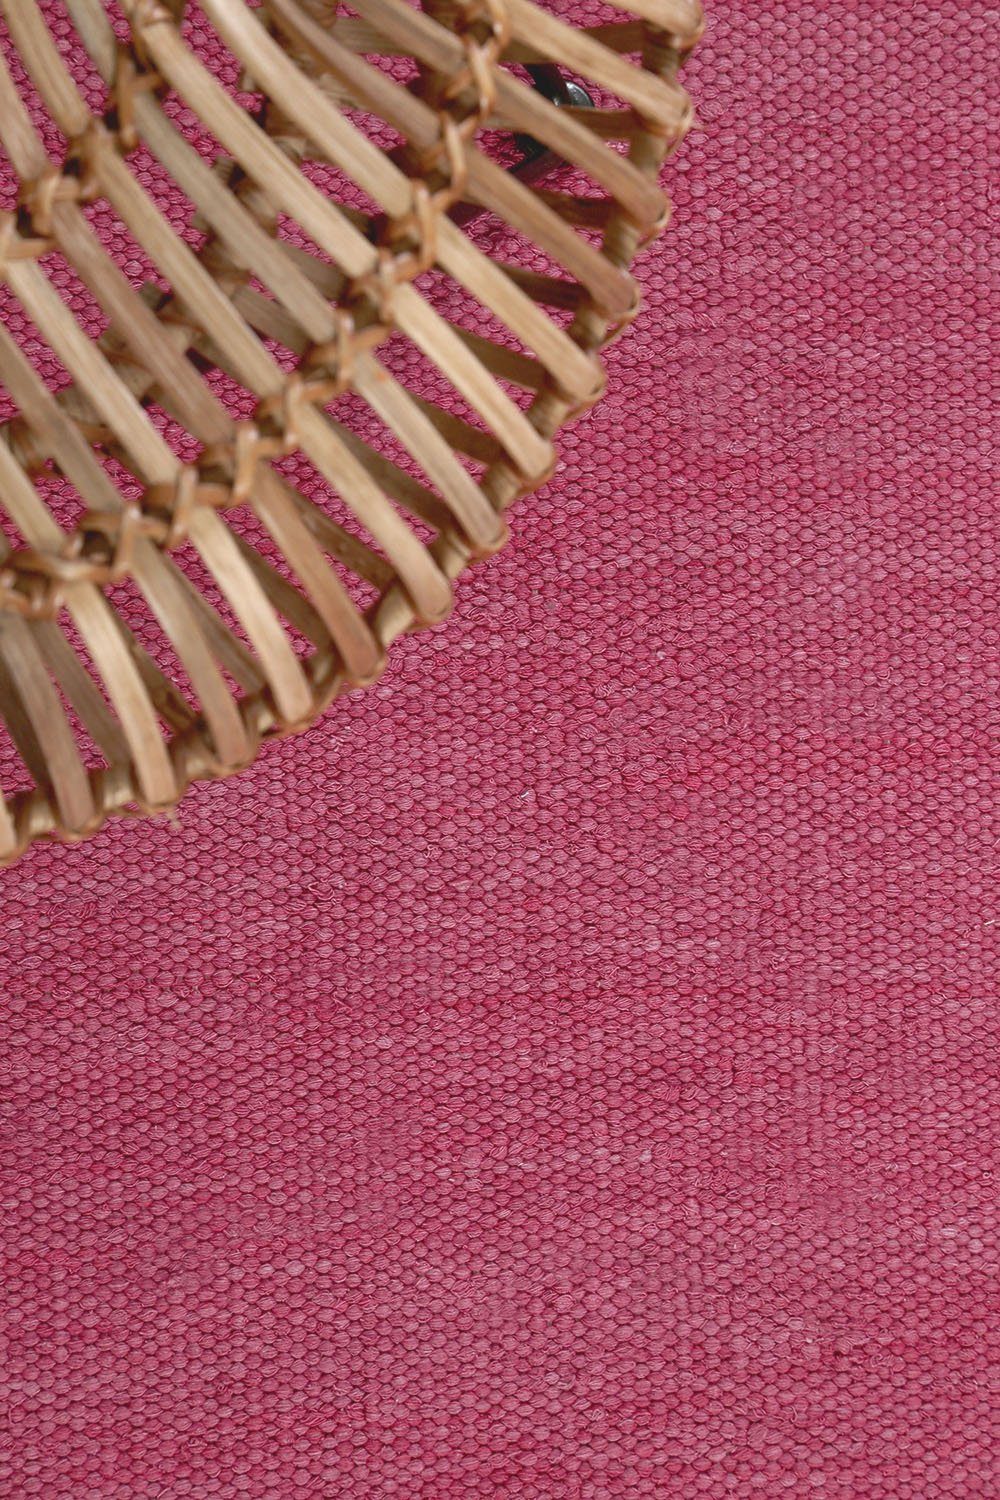 Kinderzimmer, aus Kelim, rechteckig, 5 Flachgewebe Teppich 100% einfarbig Esprit, mm, Wohnzimmer, Rainbow pink Baumwolle, Höhe: